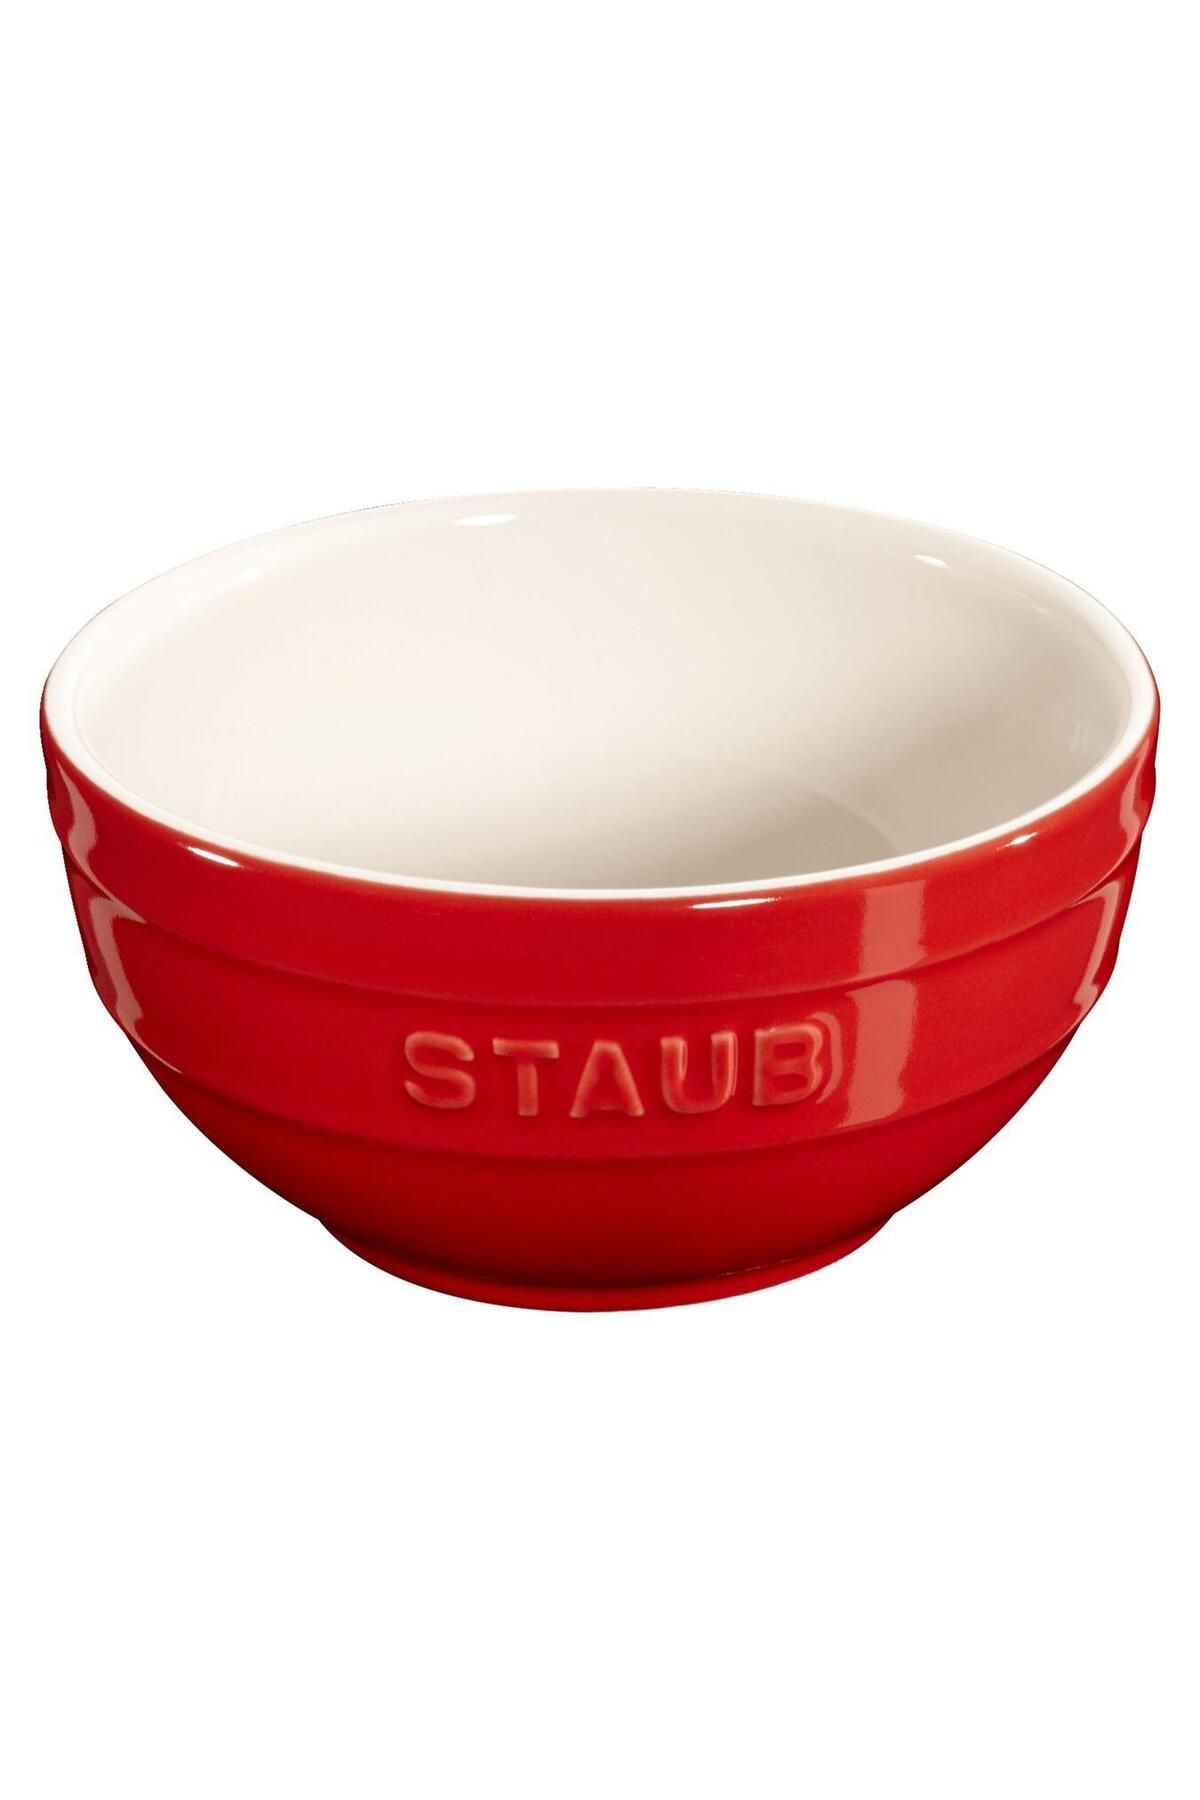 STAUB Small Bowl - 405107940